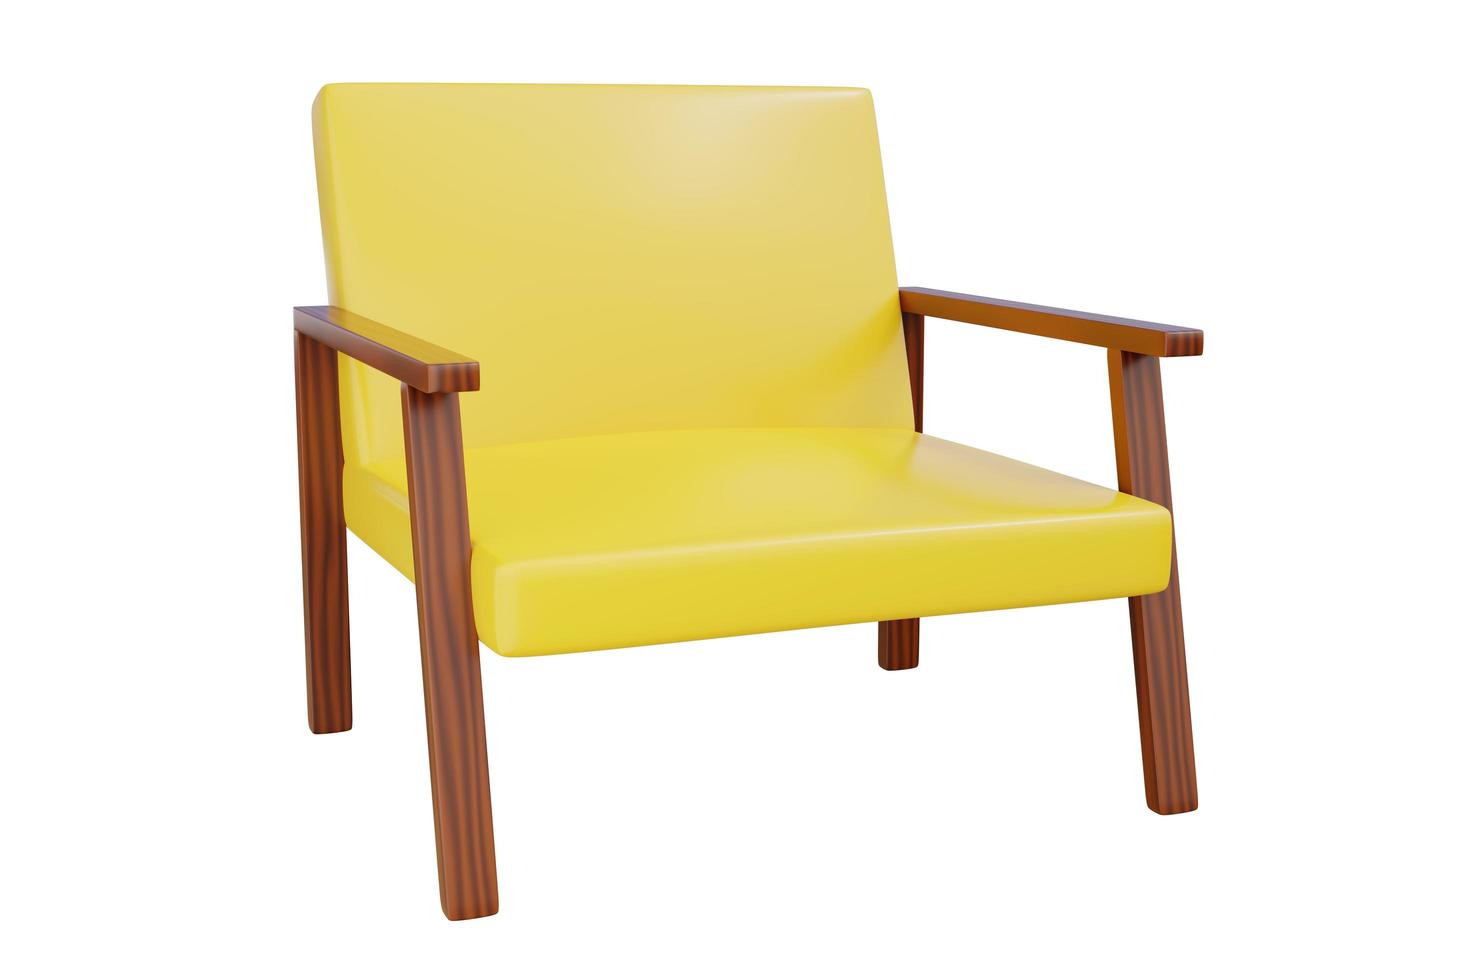 sofá amarillo, muebles sencillos o silla. sofá de estilo moderno en la sala de estar. Ilustración 3d - trazado de recorte foto